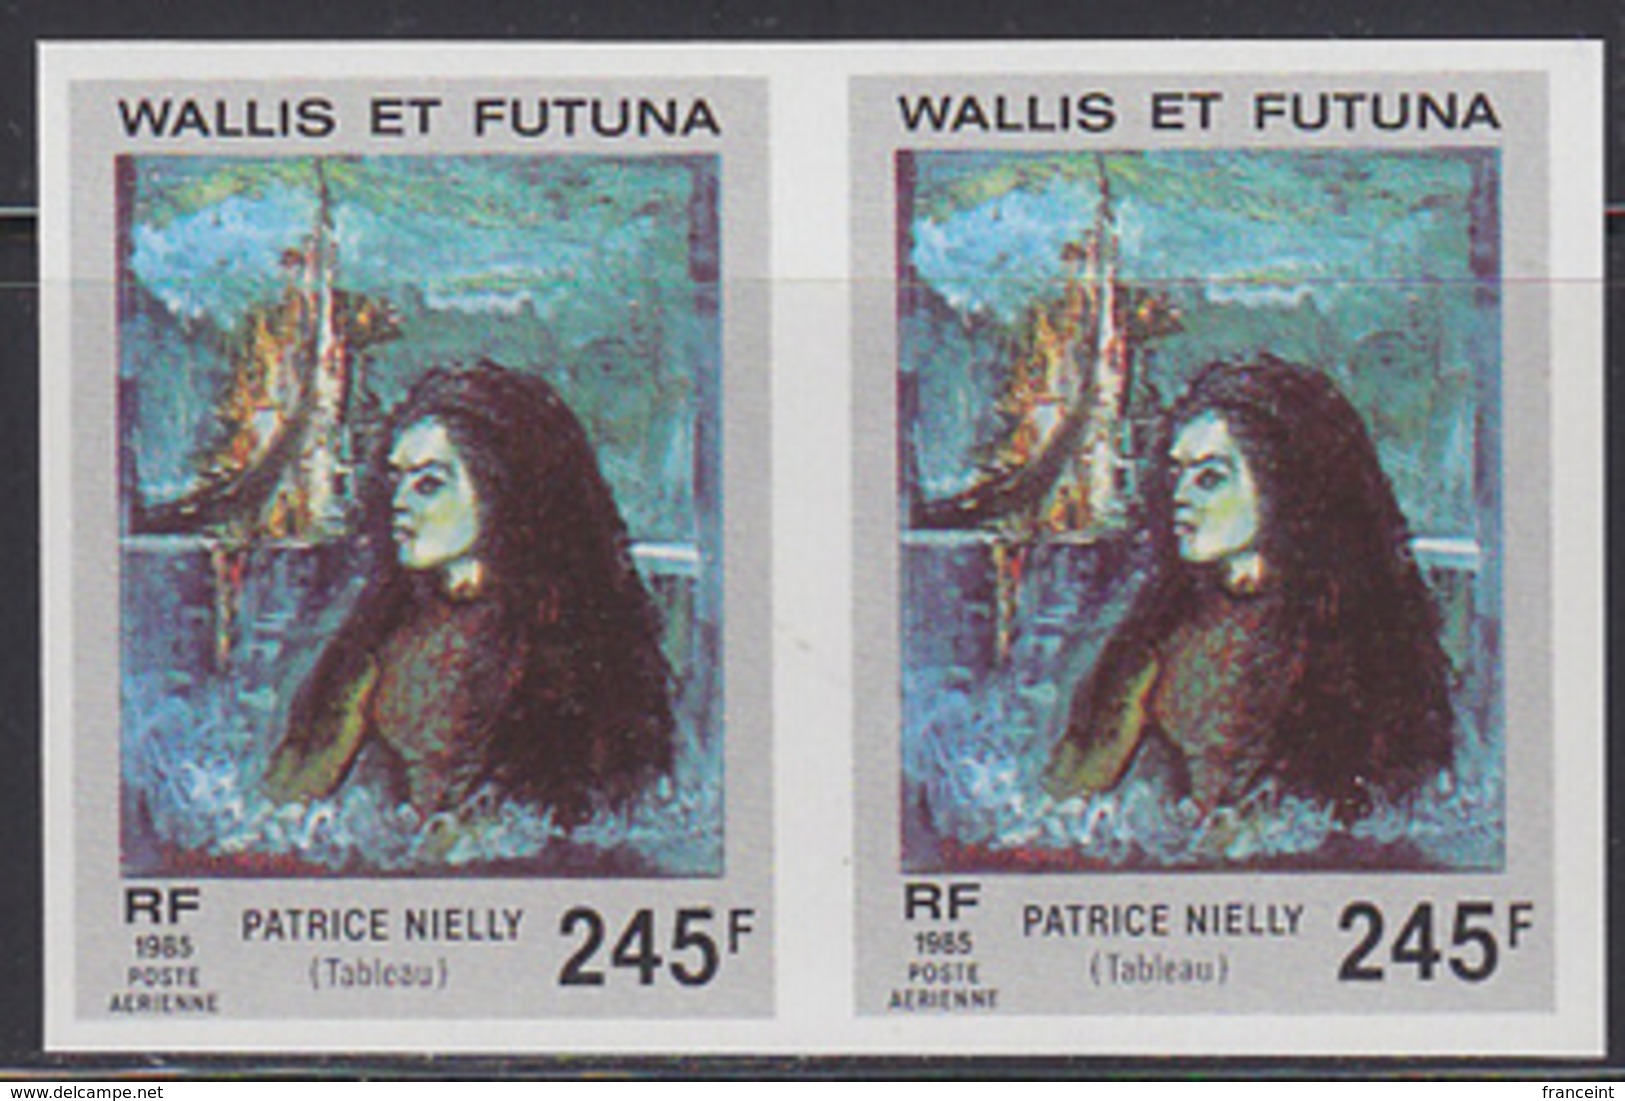 WALLIS & FUTUNA (1985) Portrait Of A Young Woman By Nielly. Imperforate Pair. Scott No C144, Yvert No PA147. - Sin Dentar, Pruebas De Impresión Y Variedades